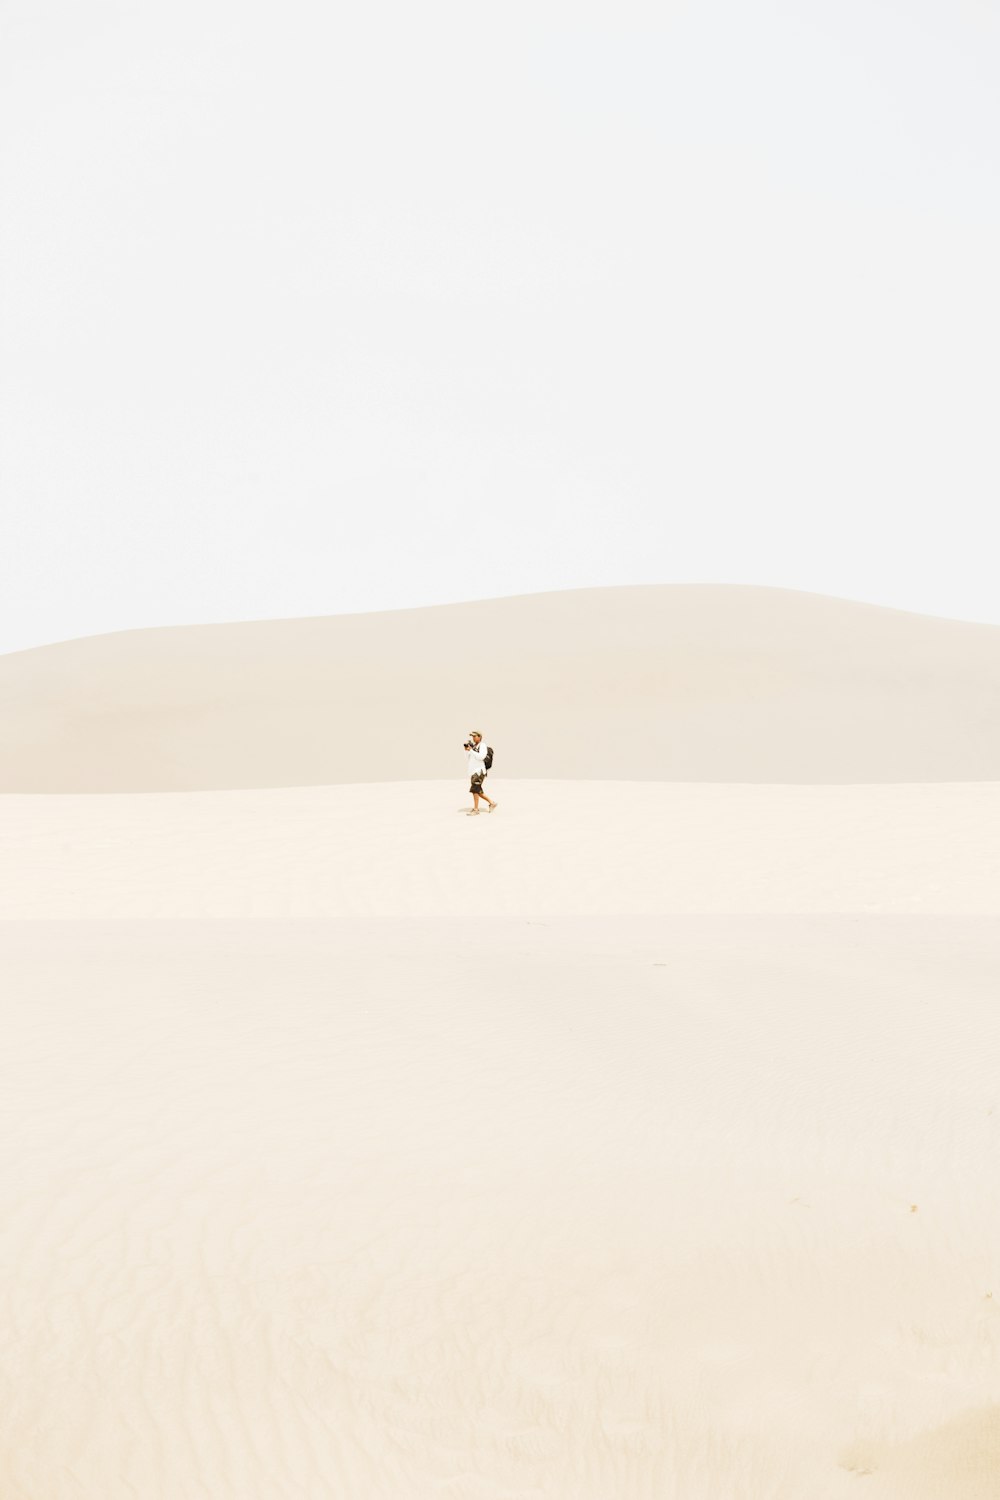 persona in mezzo al deserto durante il giorno